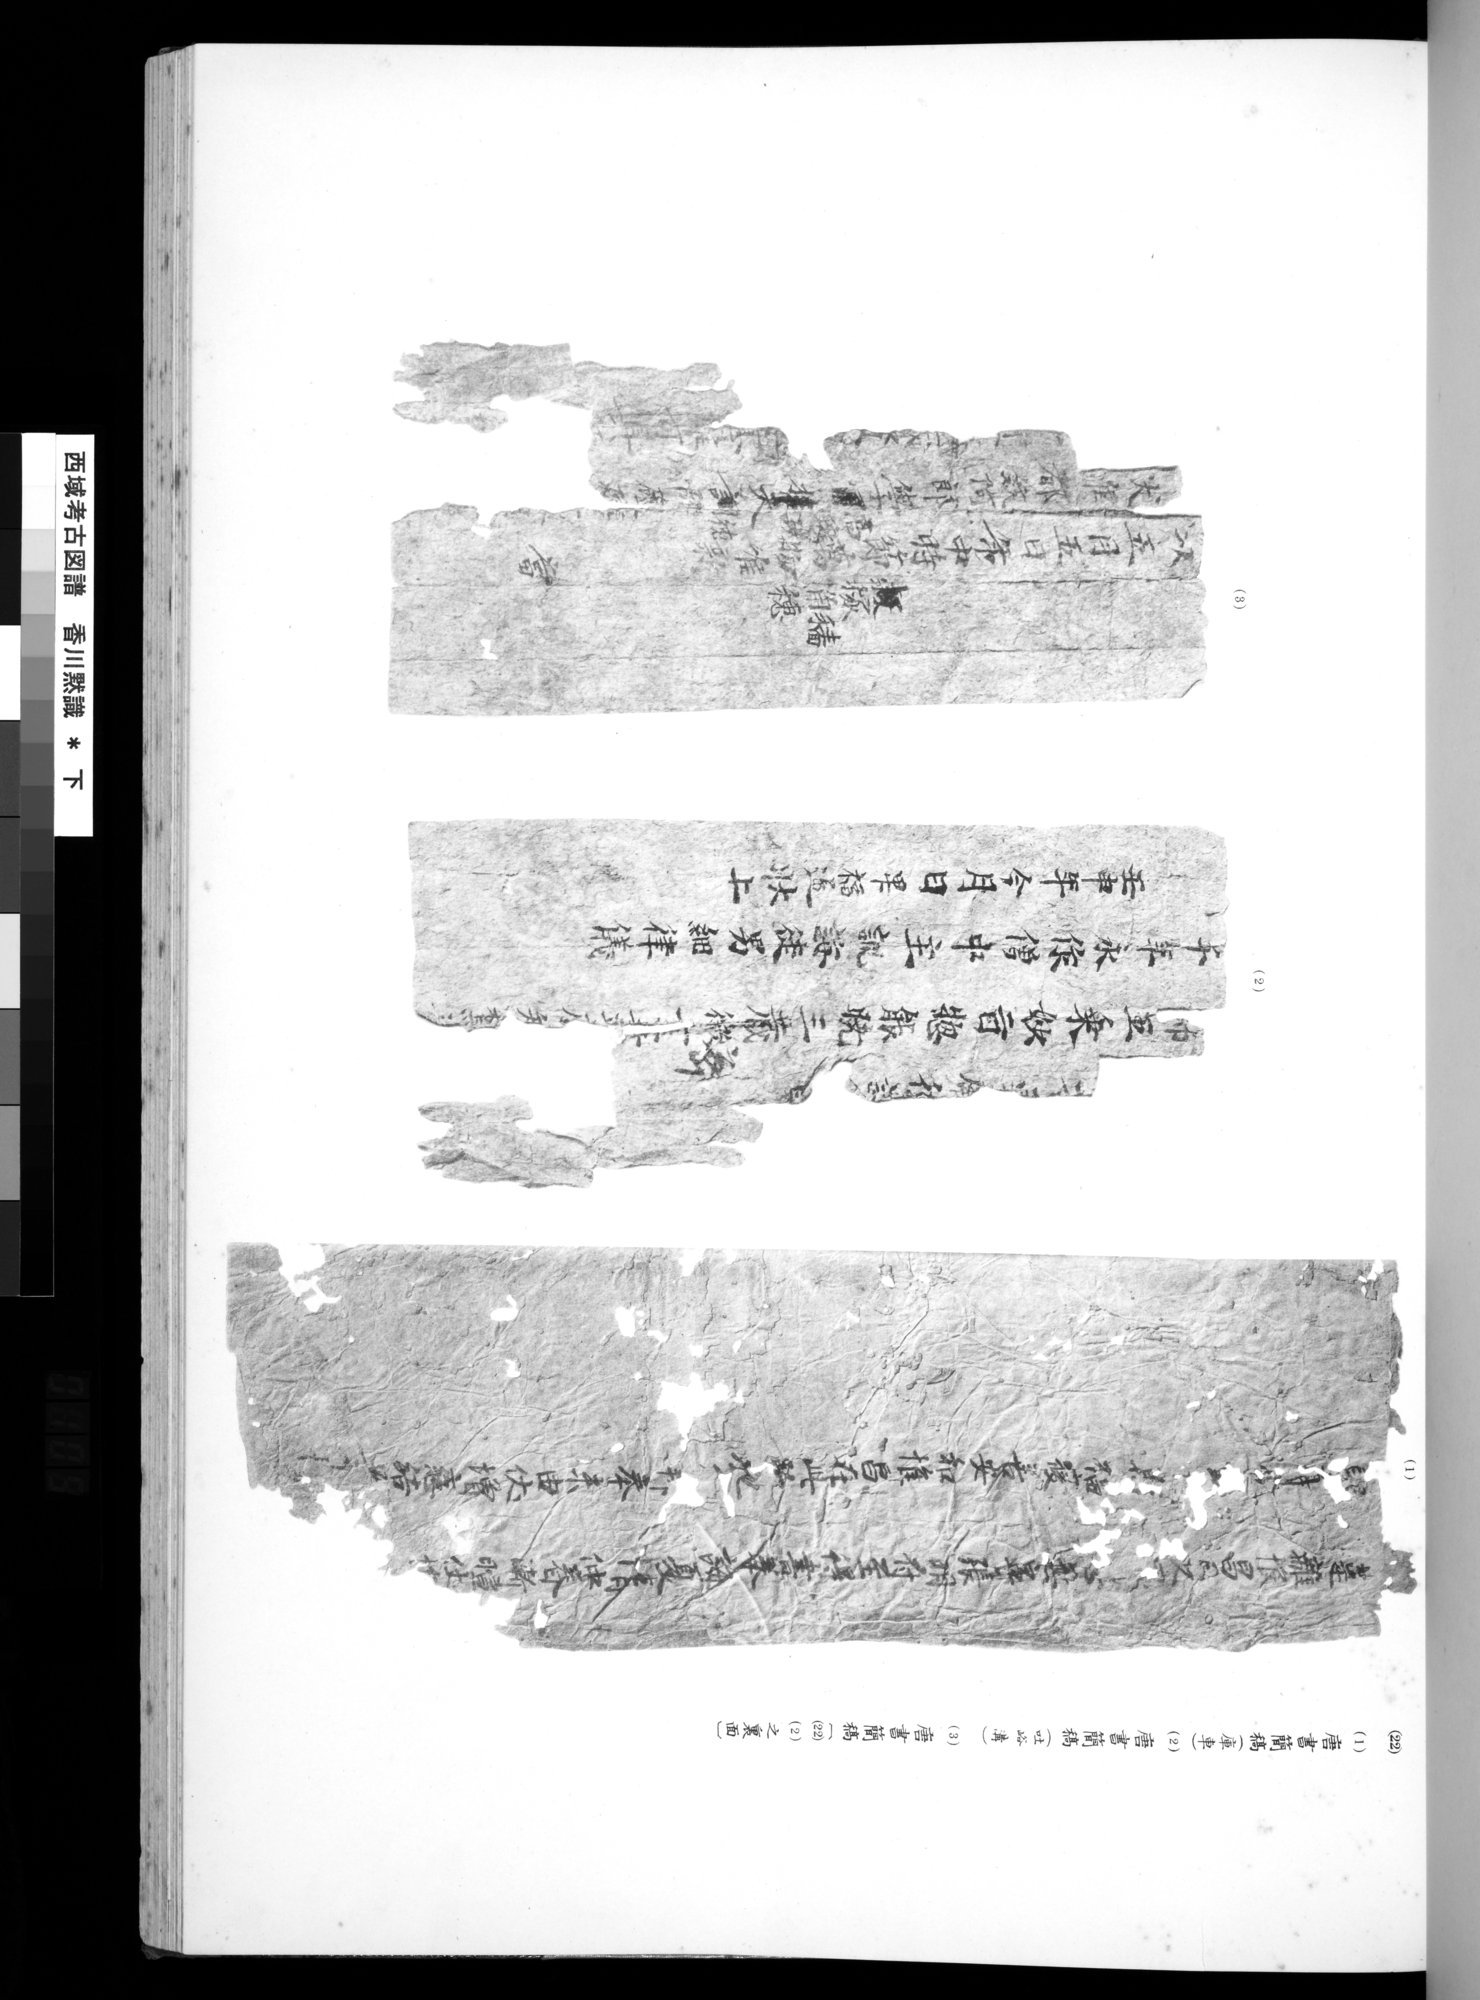 西域考古図譜 : vol.2 / 217 ページ（白黒高解像度画像）